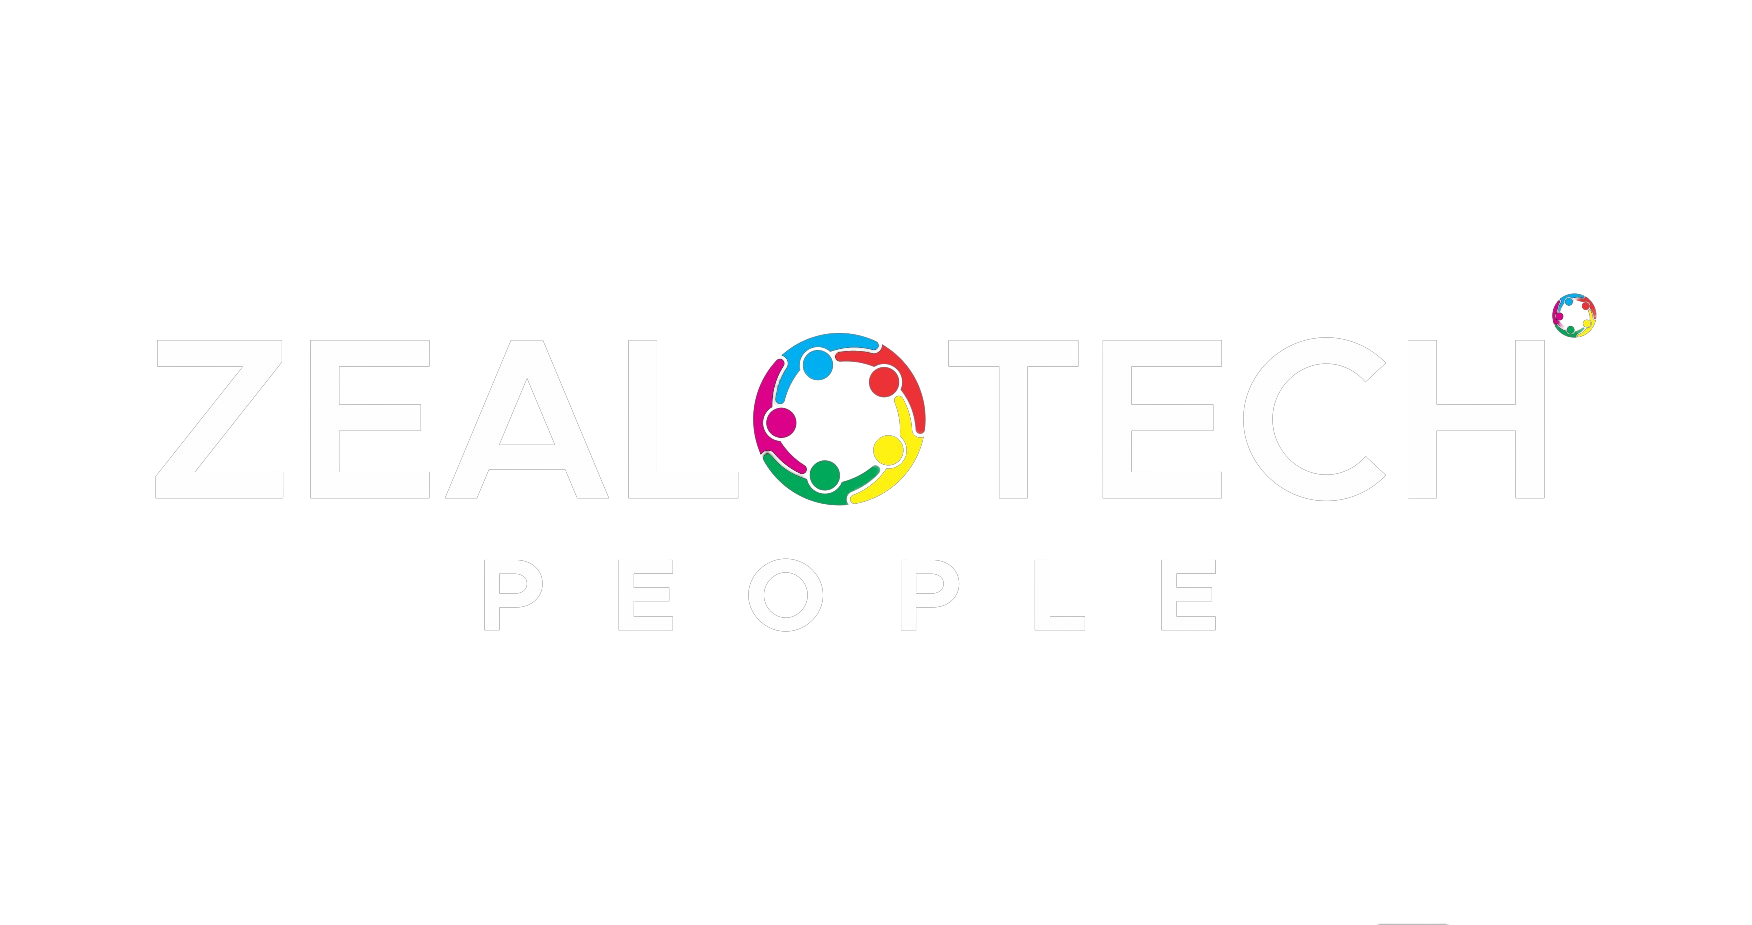 Zealotech People